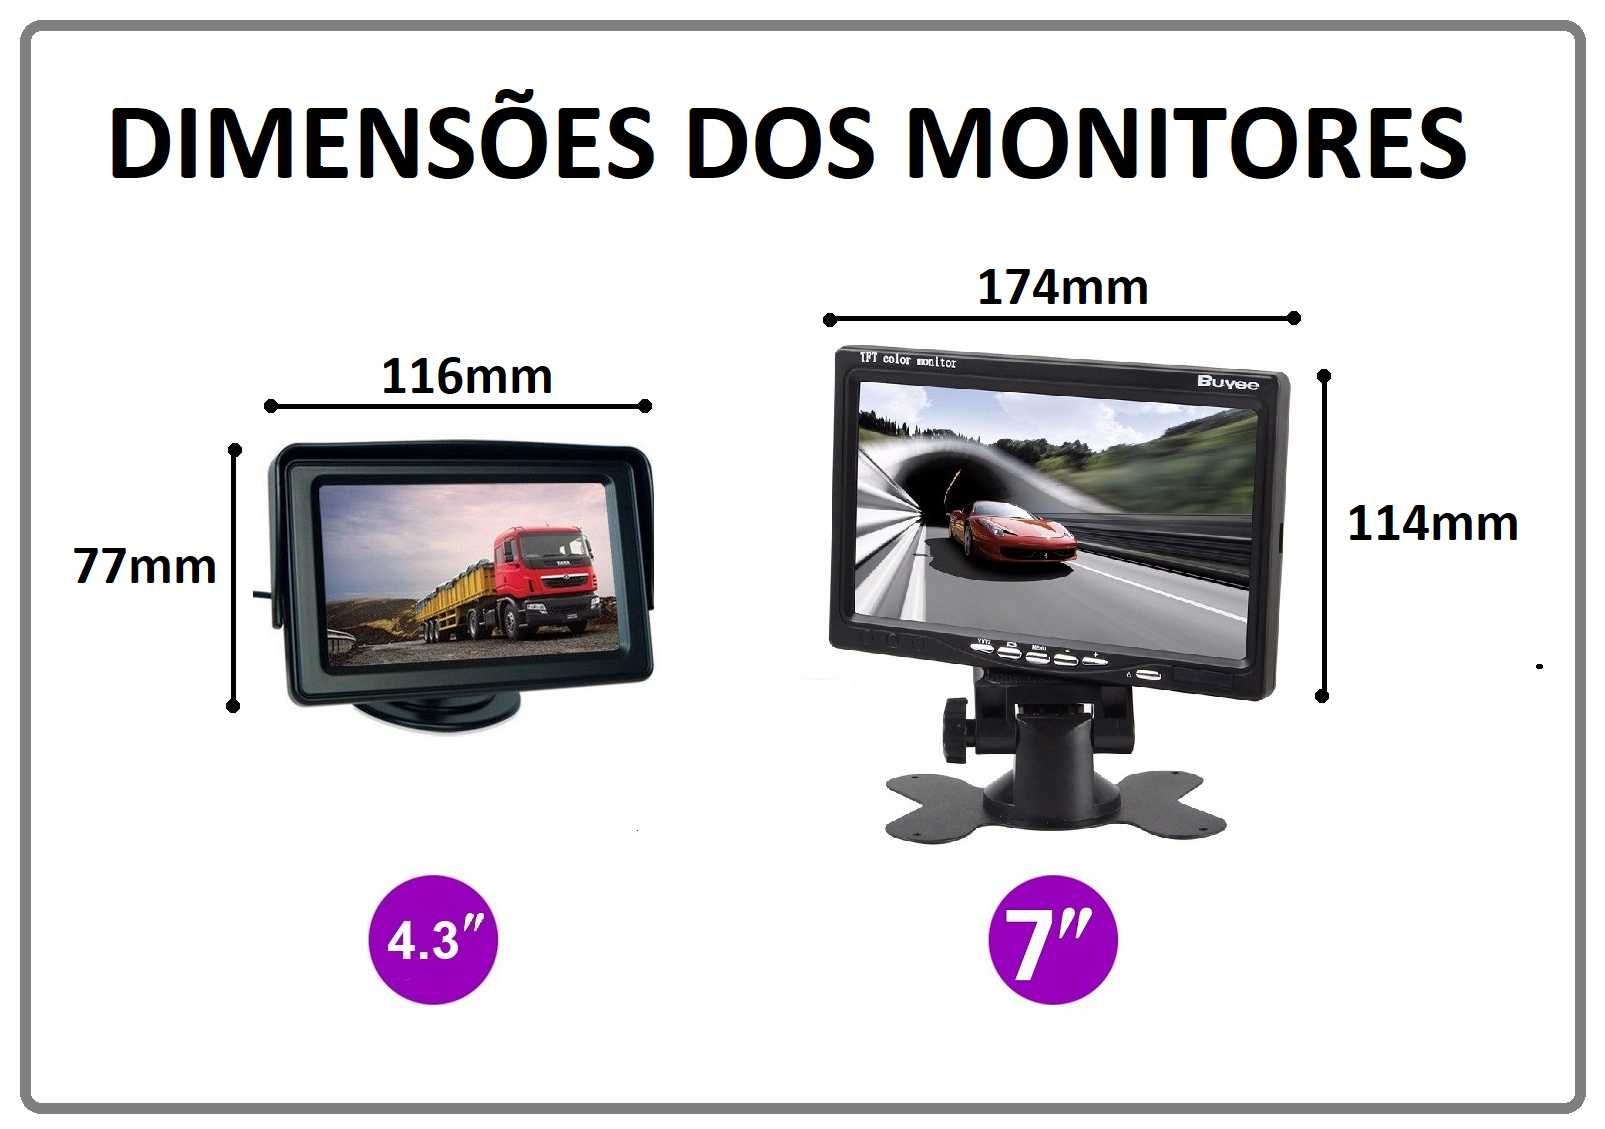 KIT Monitor Estacionamento (Camera Traseira) - Marcha Atrás (SEM FIOS)